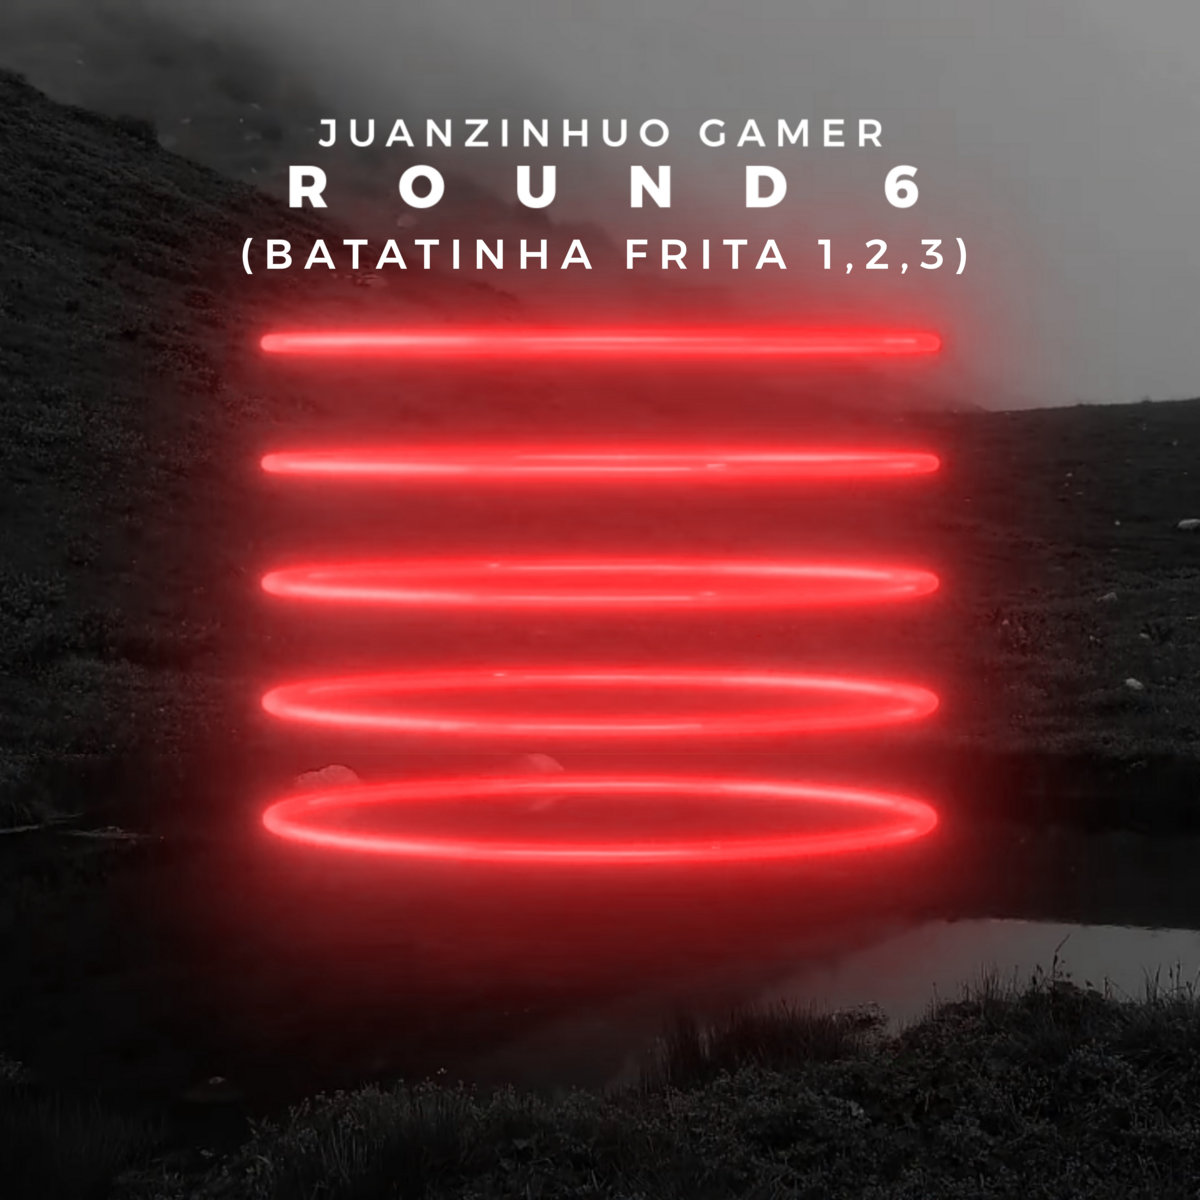 Batatinha Frita 123 : Round 6 para Android - Download